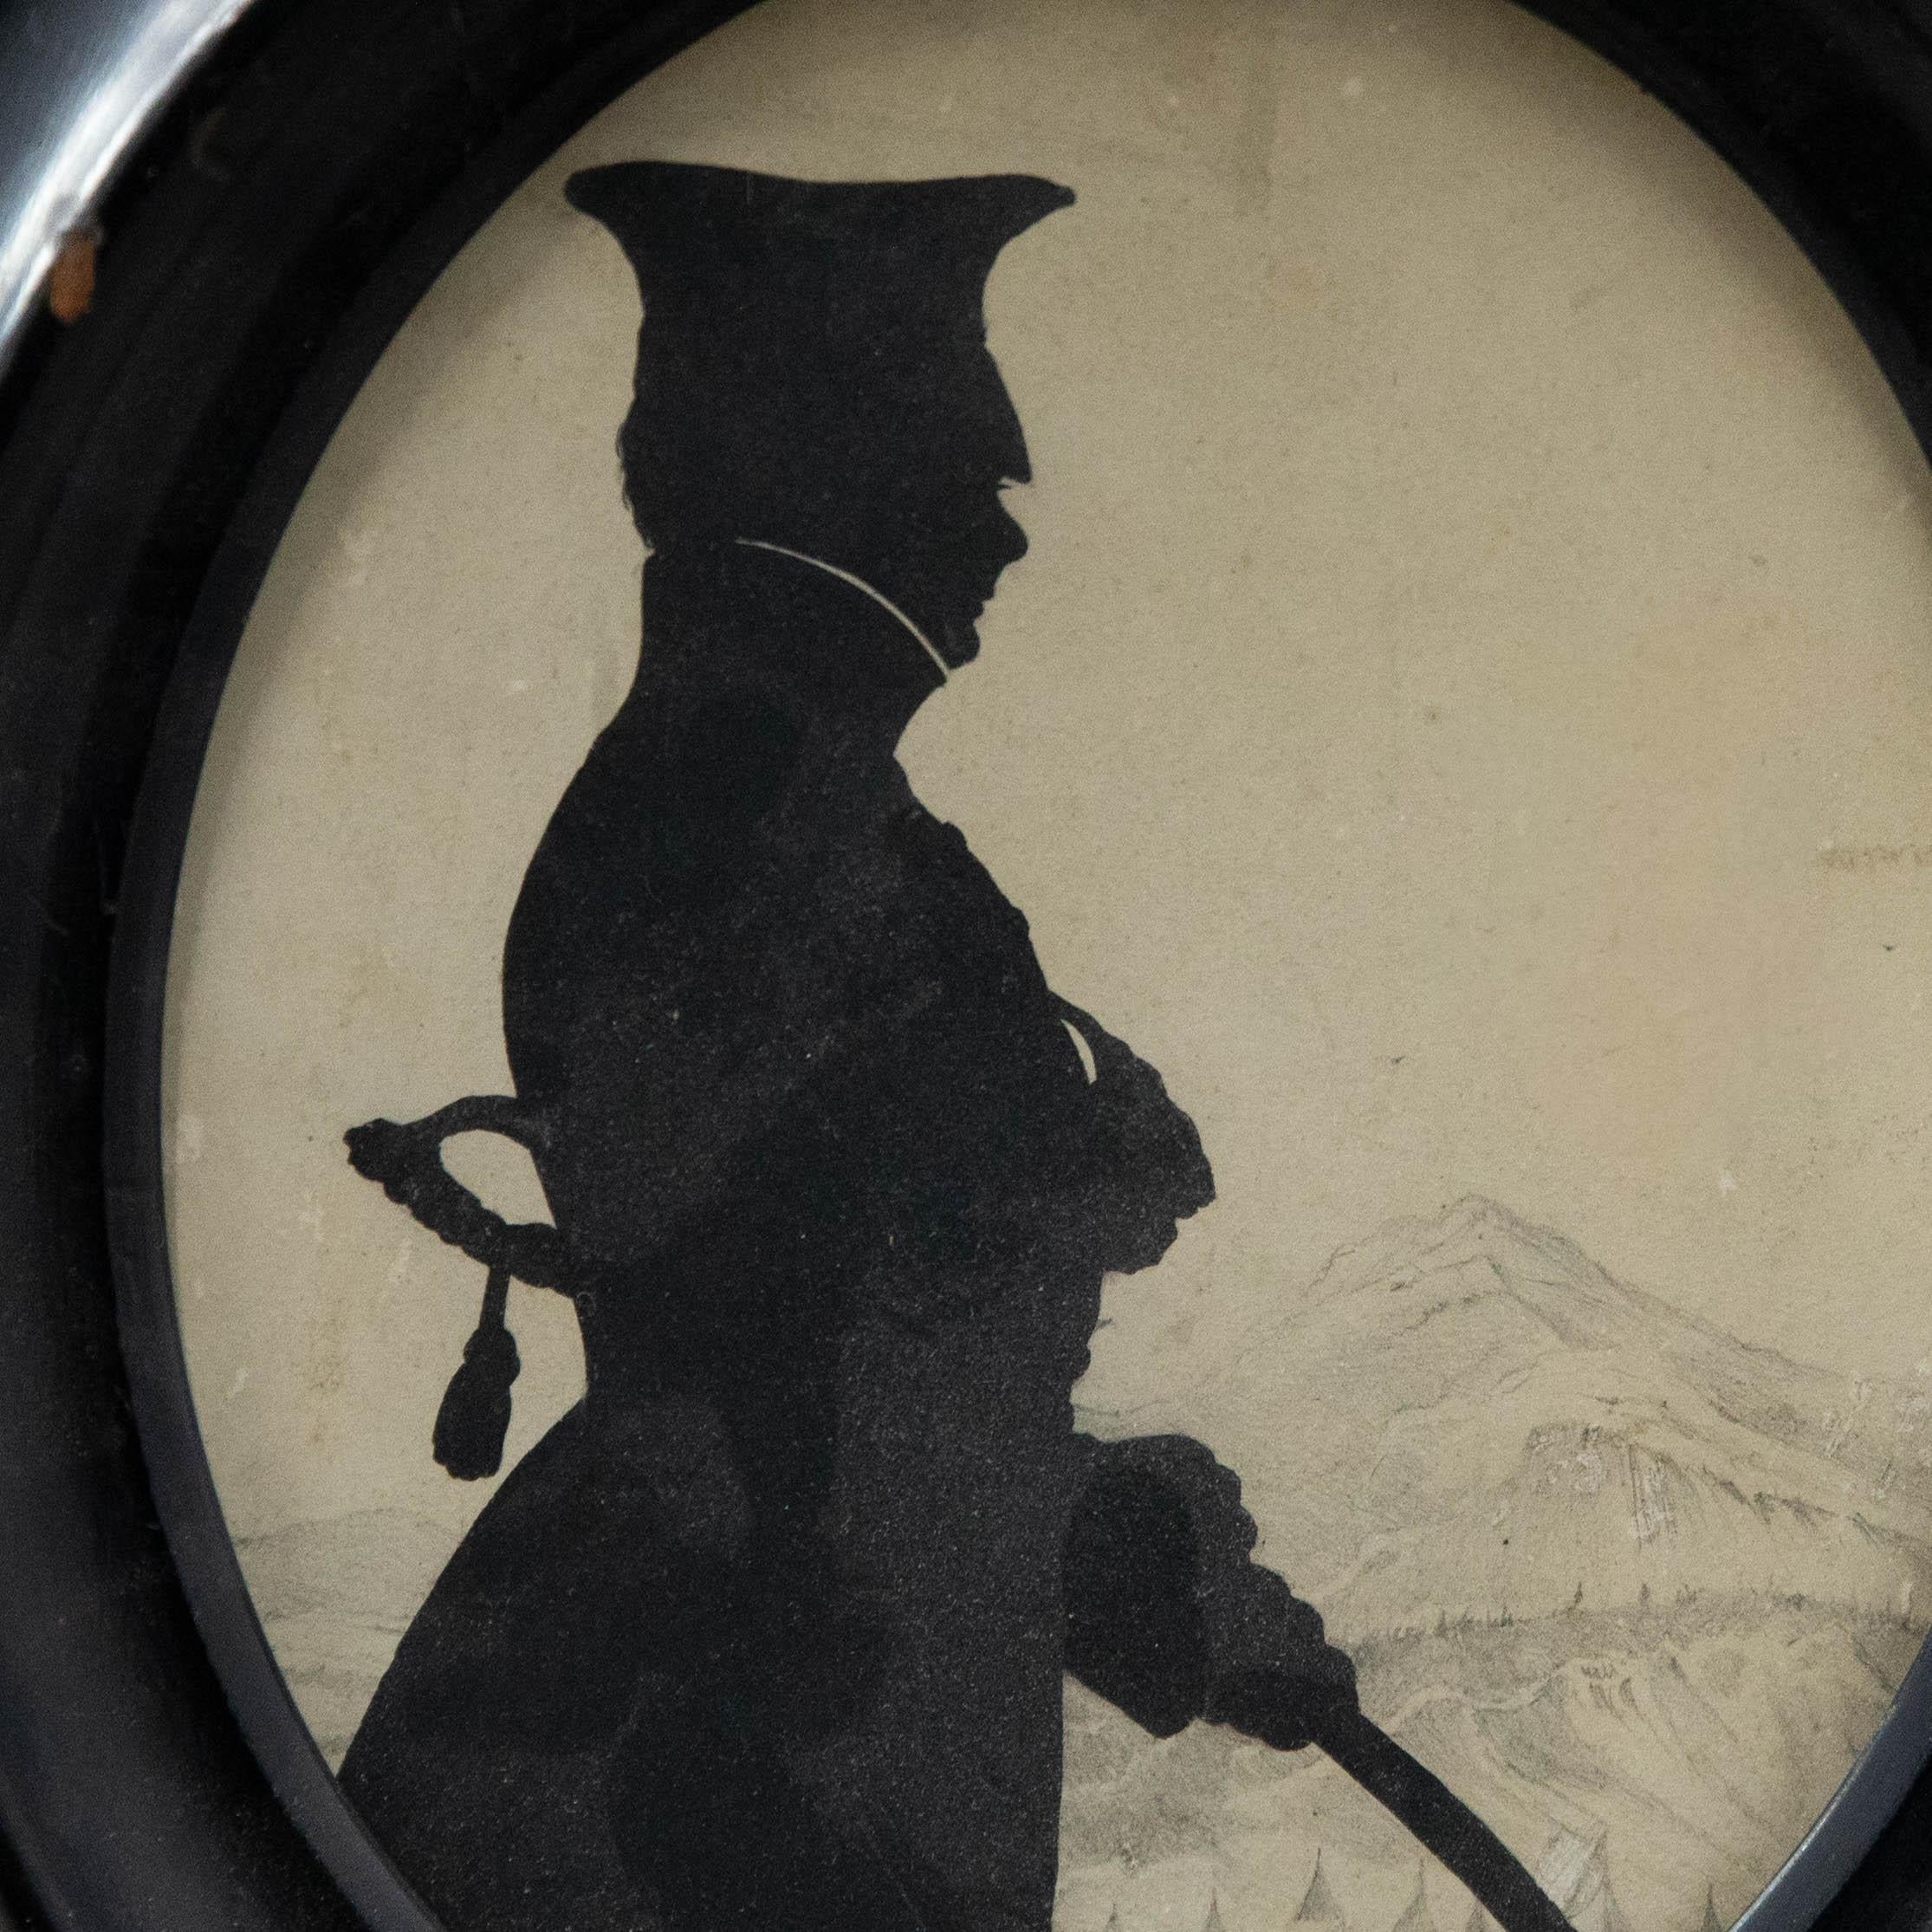 Charmante étude de silhouette d'un soldat armé devant un paysage alpin dessiné à la mine de plomb. Non signée. Bien présenté dans un cadre ovale en laque noire. Sur le papier.